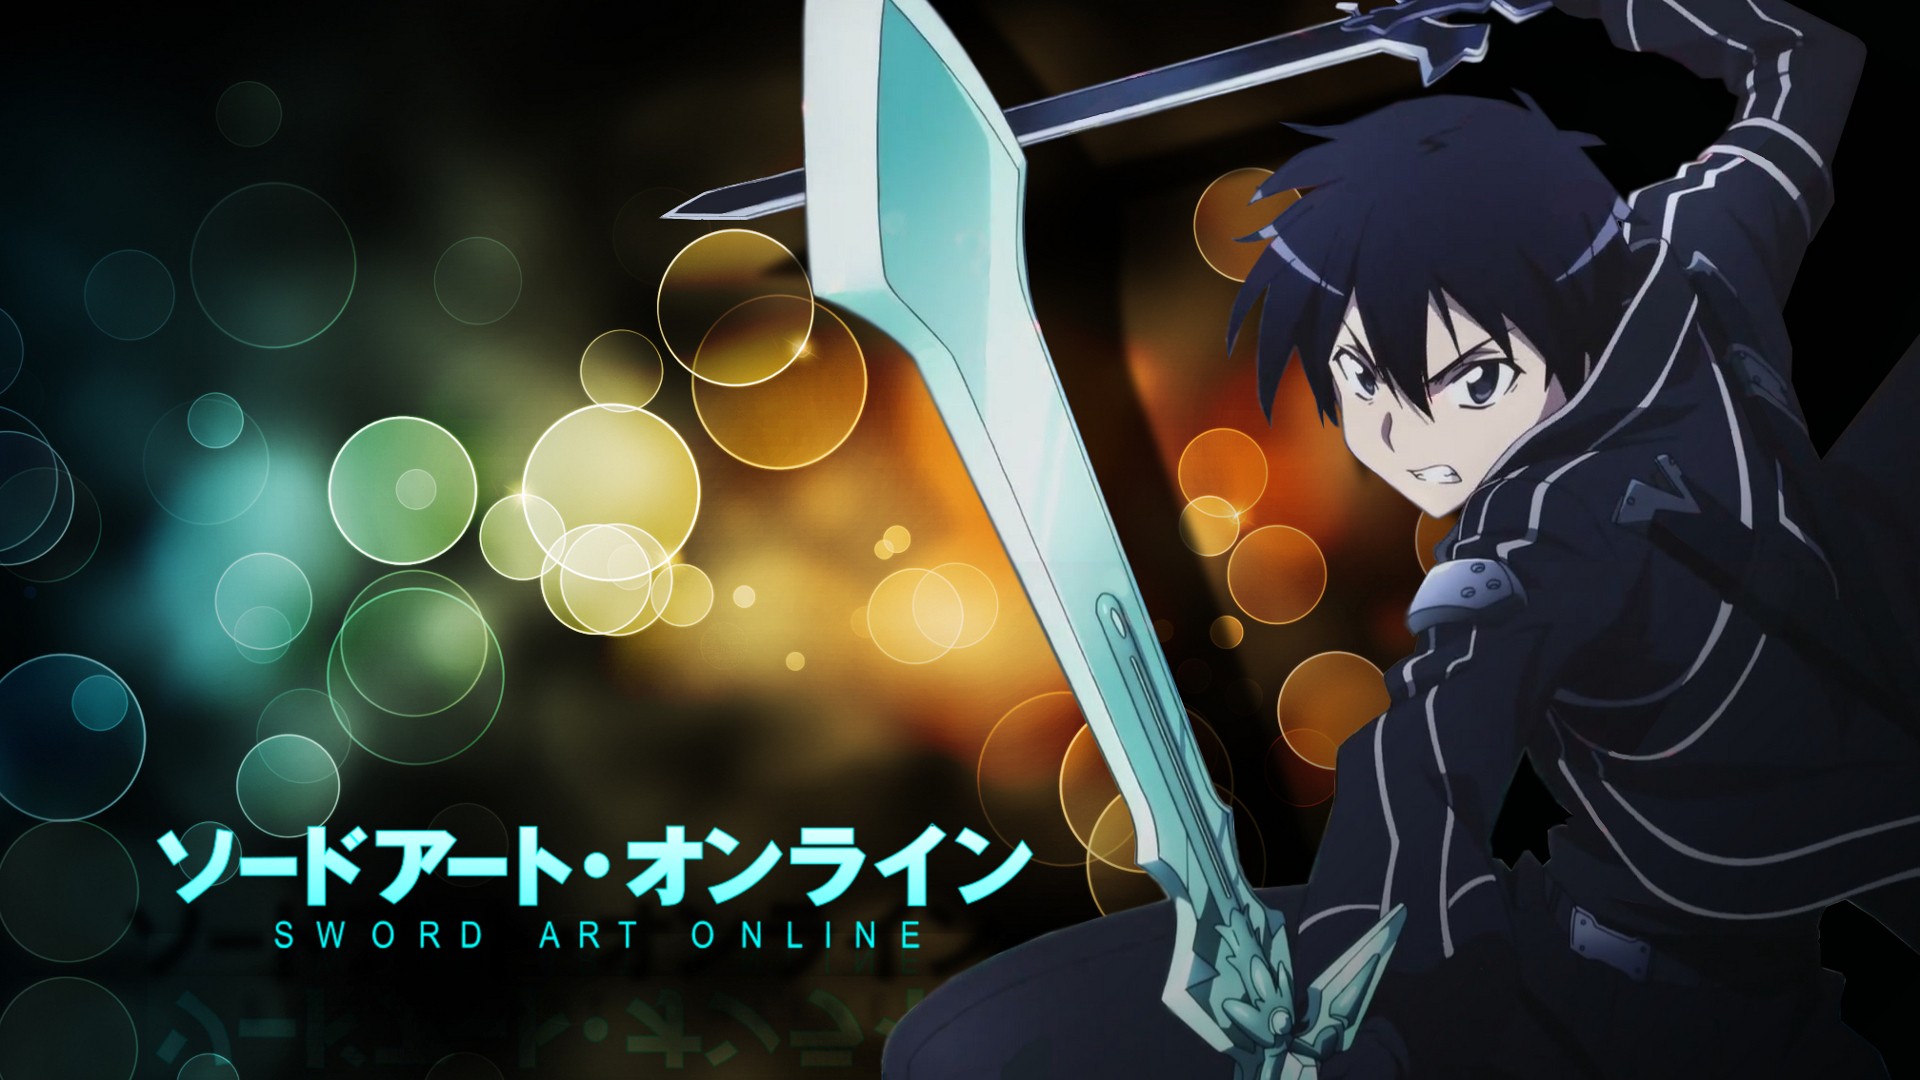 Download Sword Art Online Wallpaper